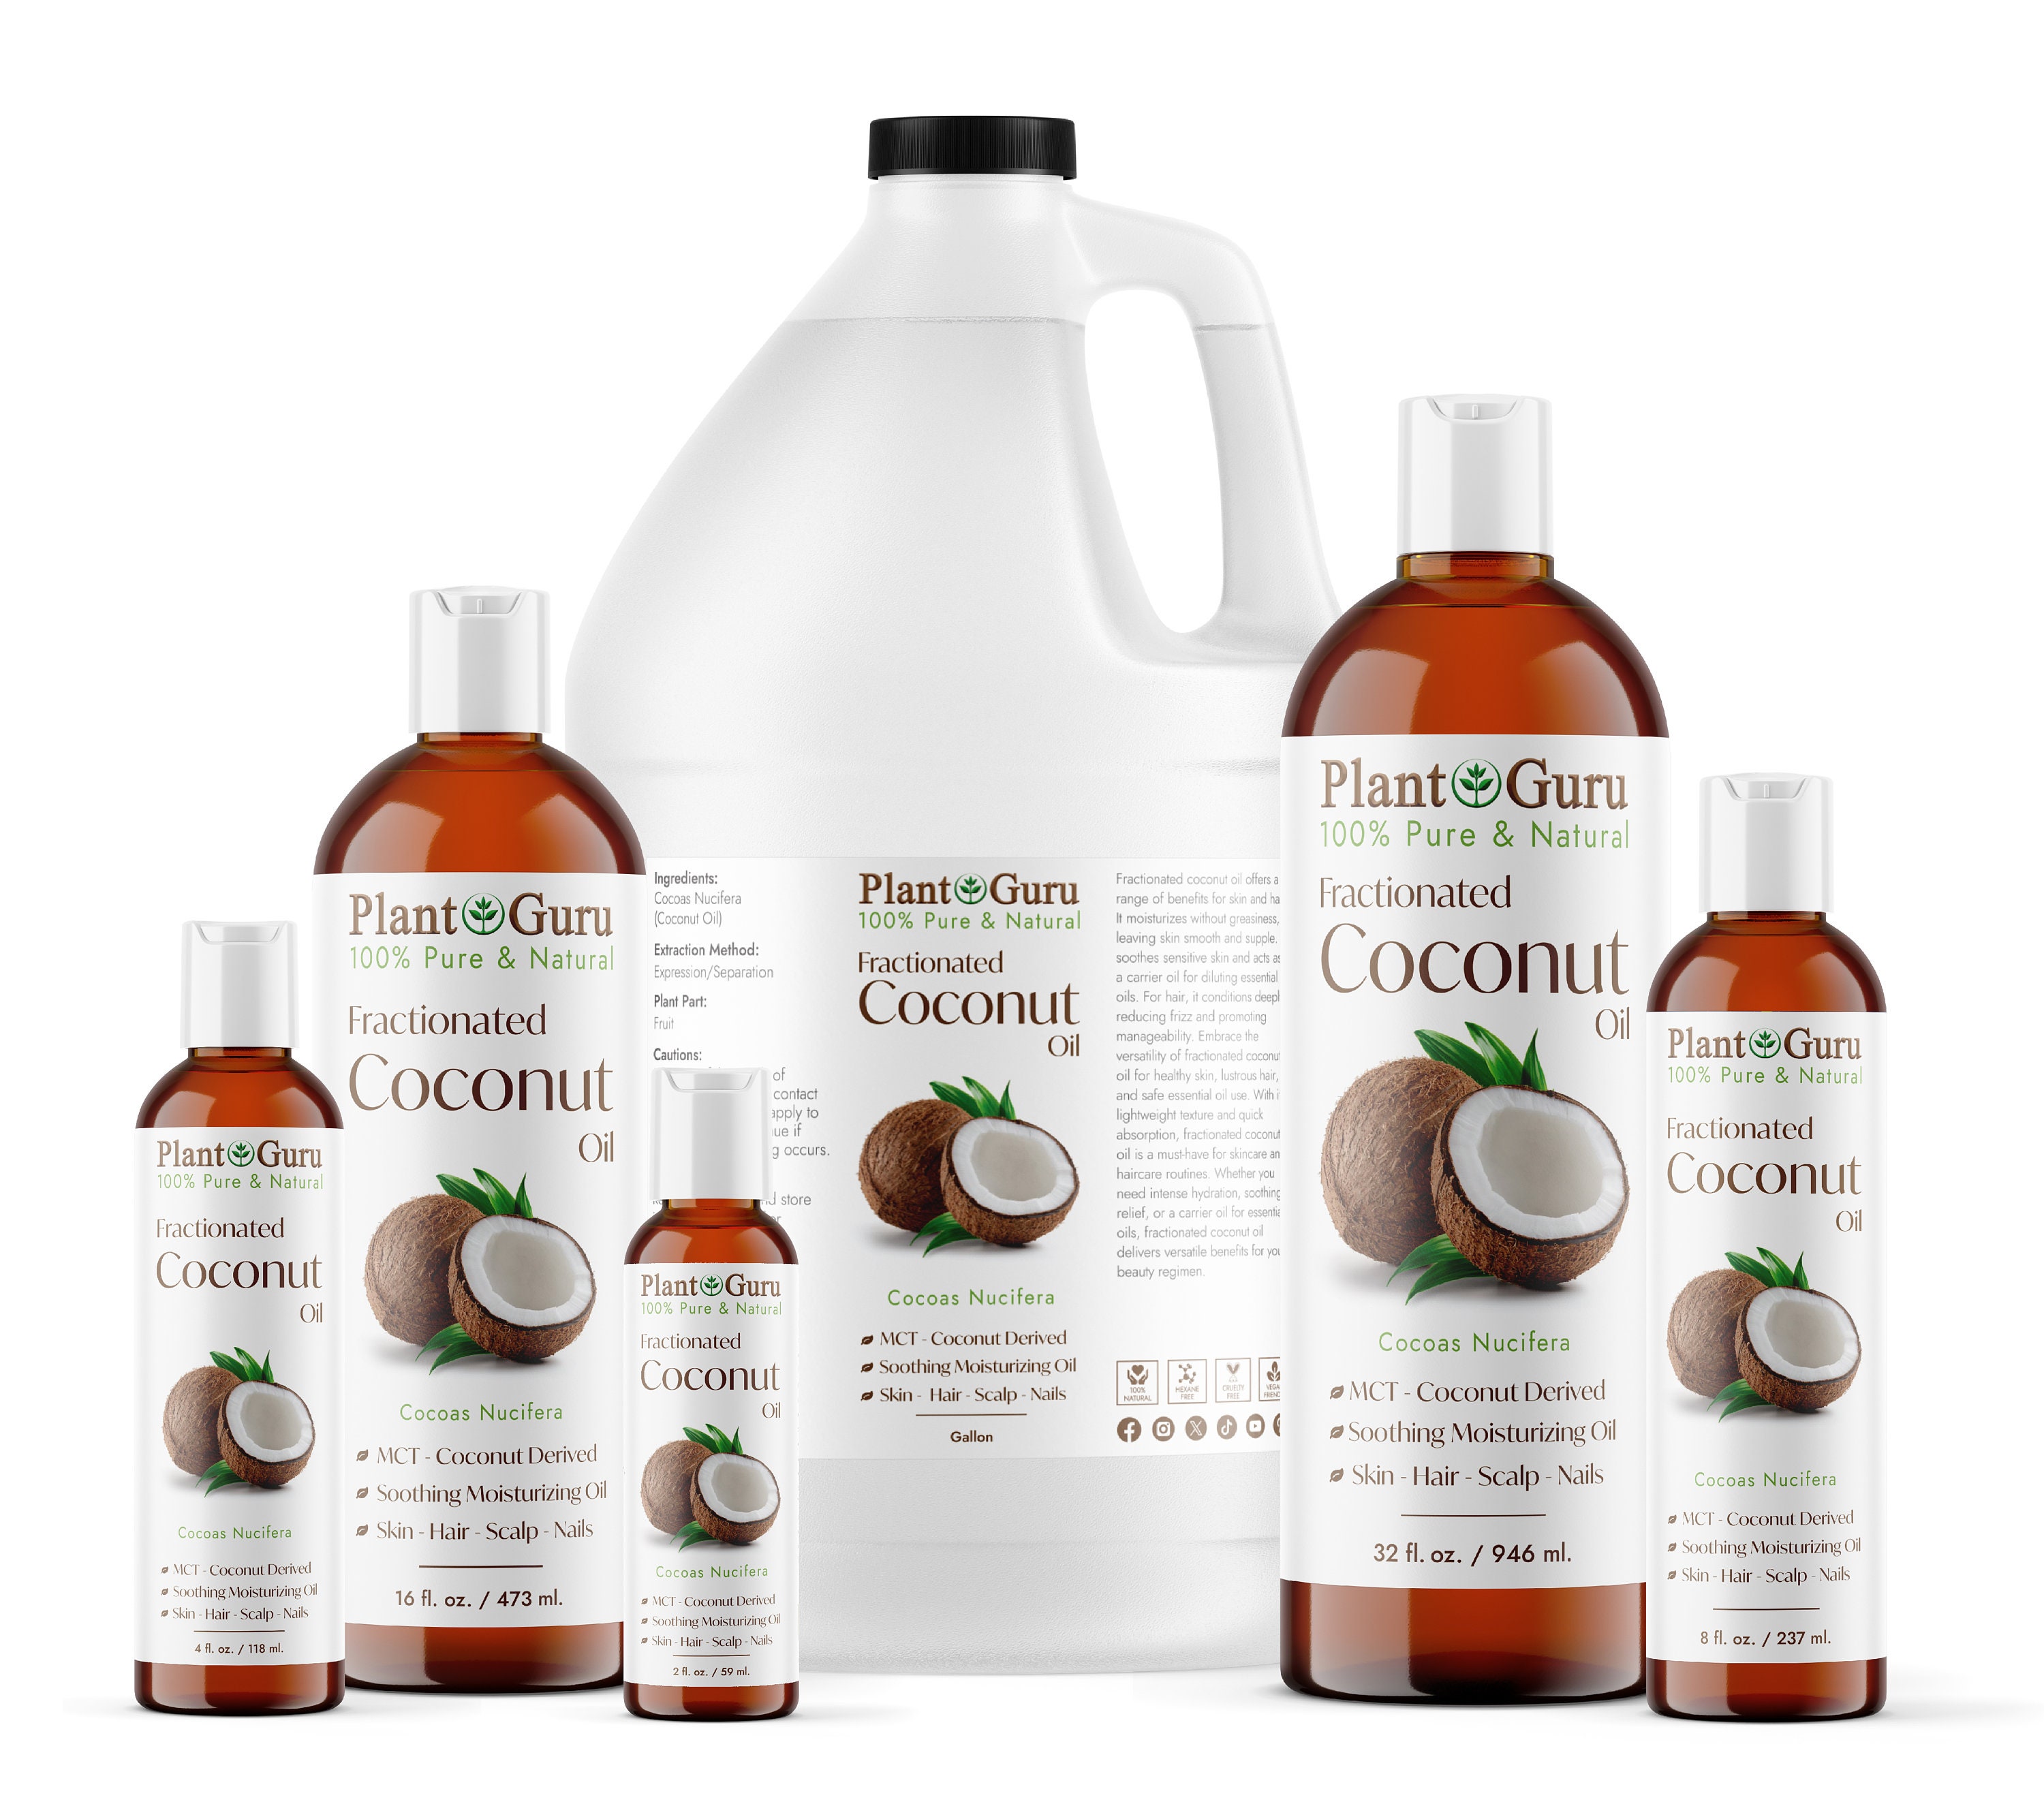 Premium MCT Liquid Coconut Oil 32oz (2 pack) - LEVO Oil Infusion, Inc.